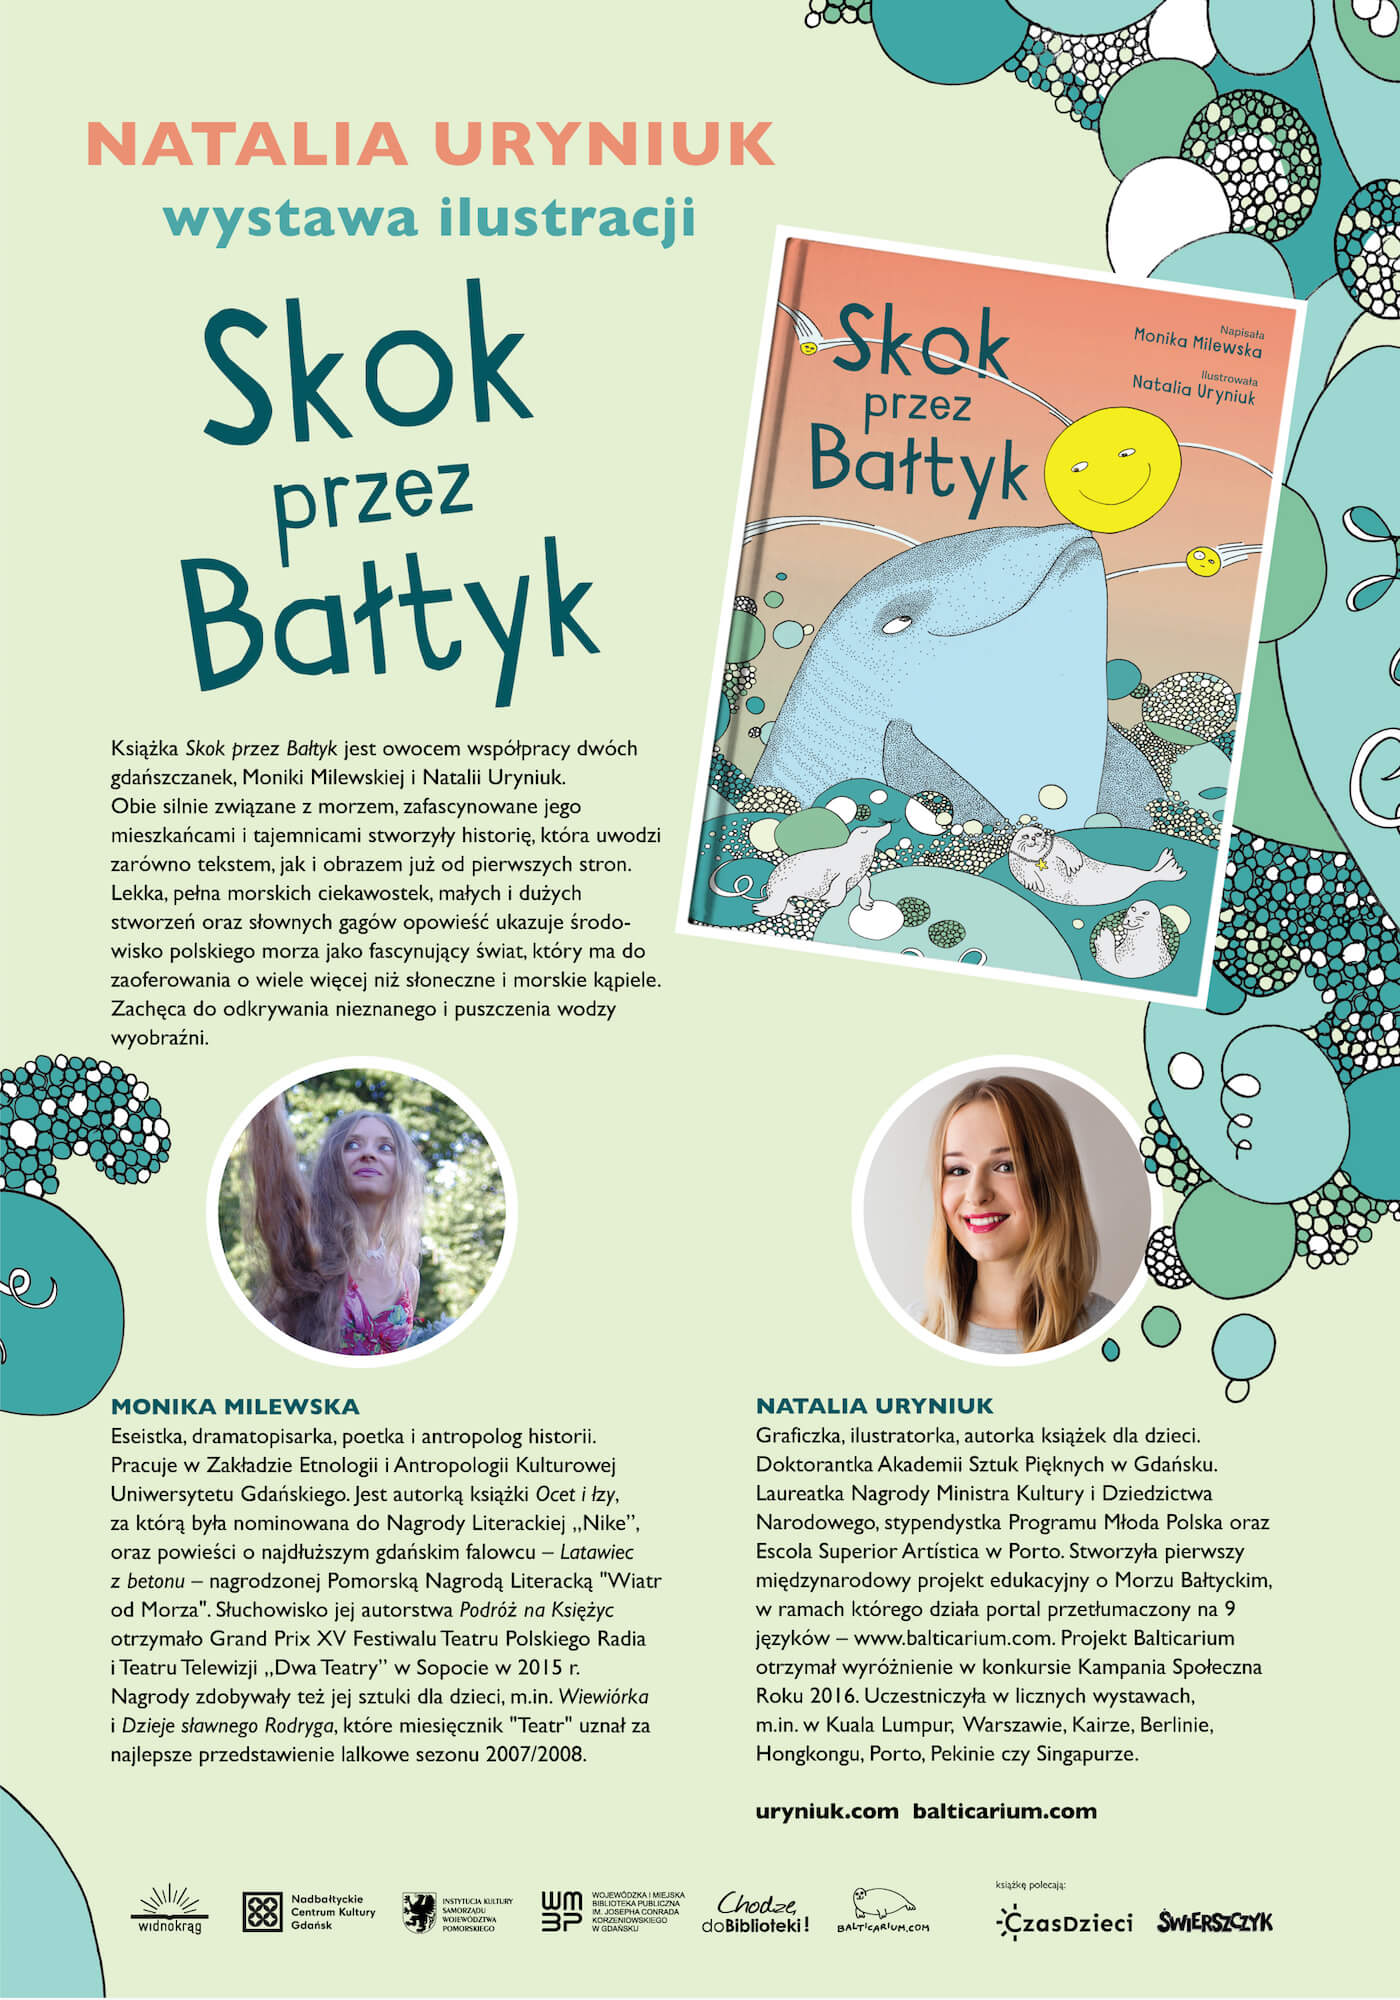 Wystawa "Skok na Bałtyk" - plansza informacyjna 